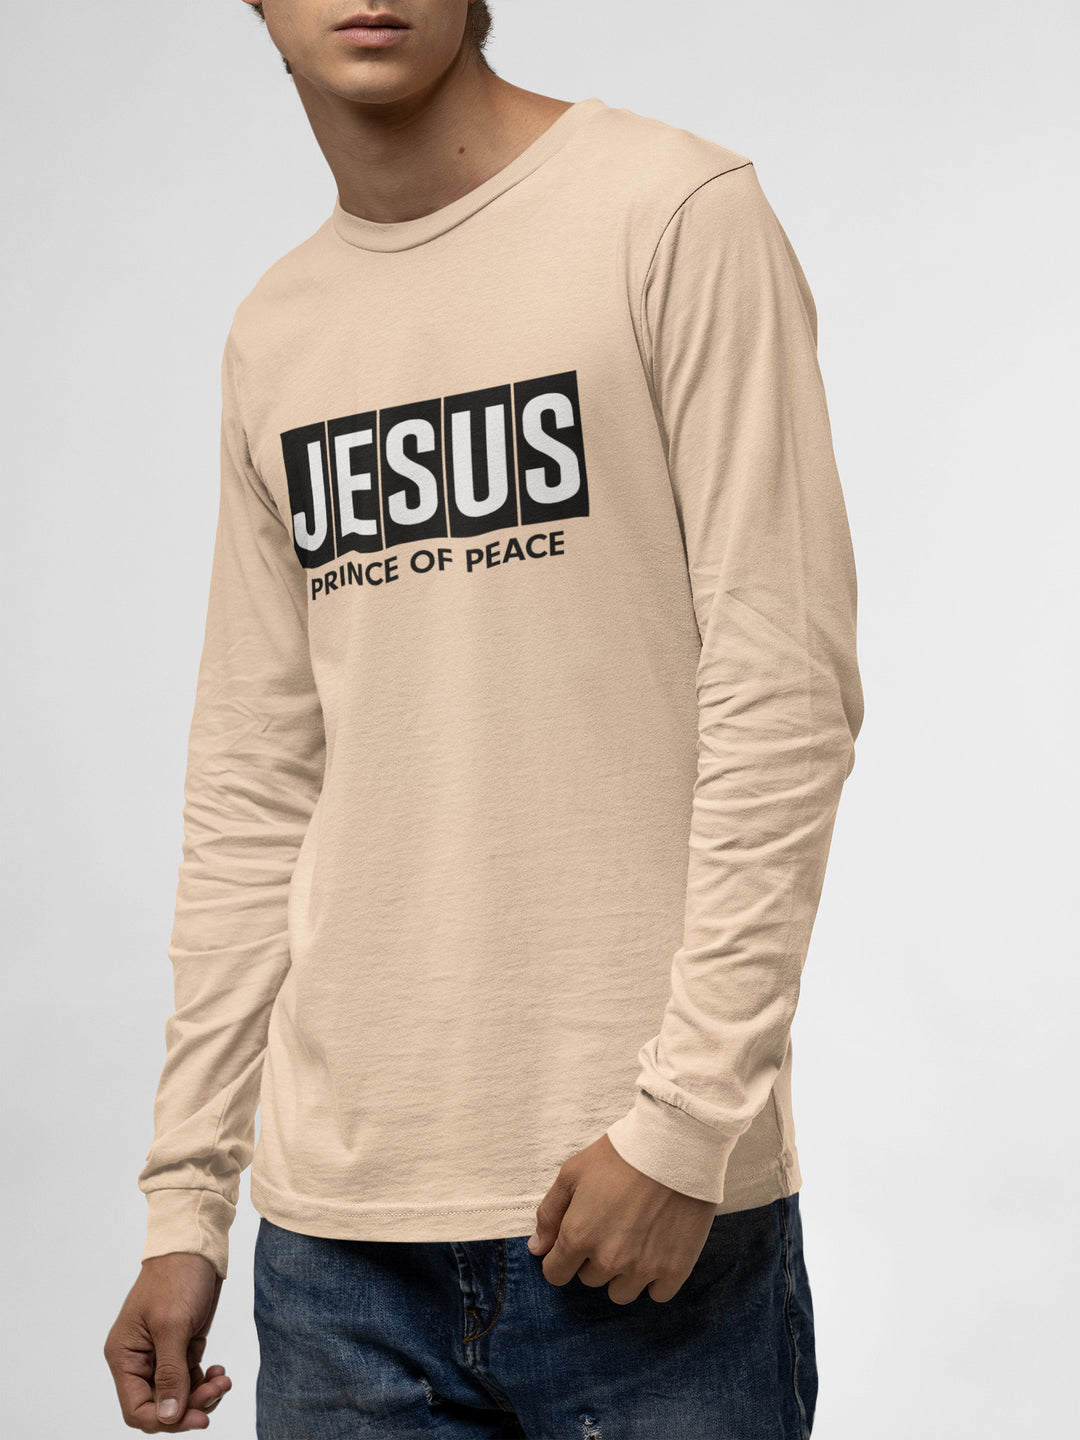 Jesus - Prince of Peace